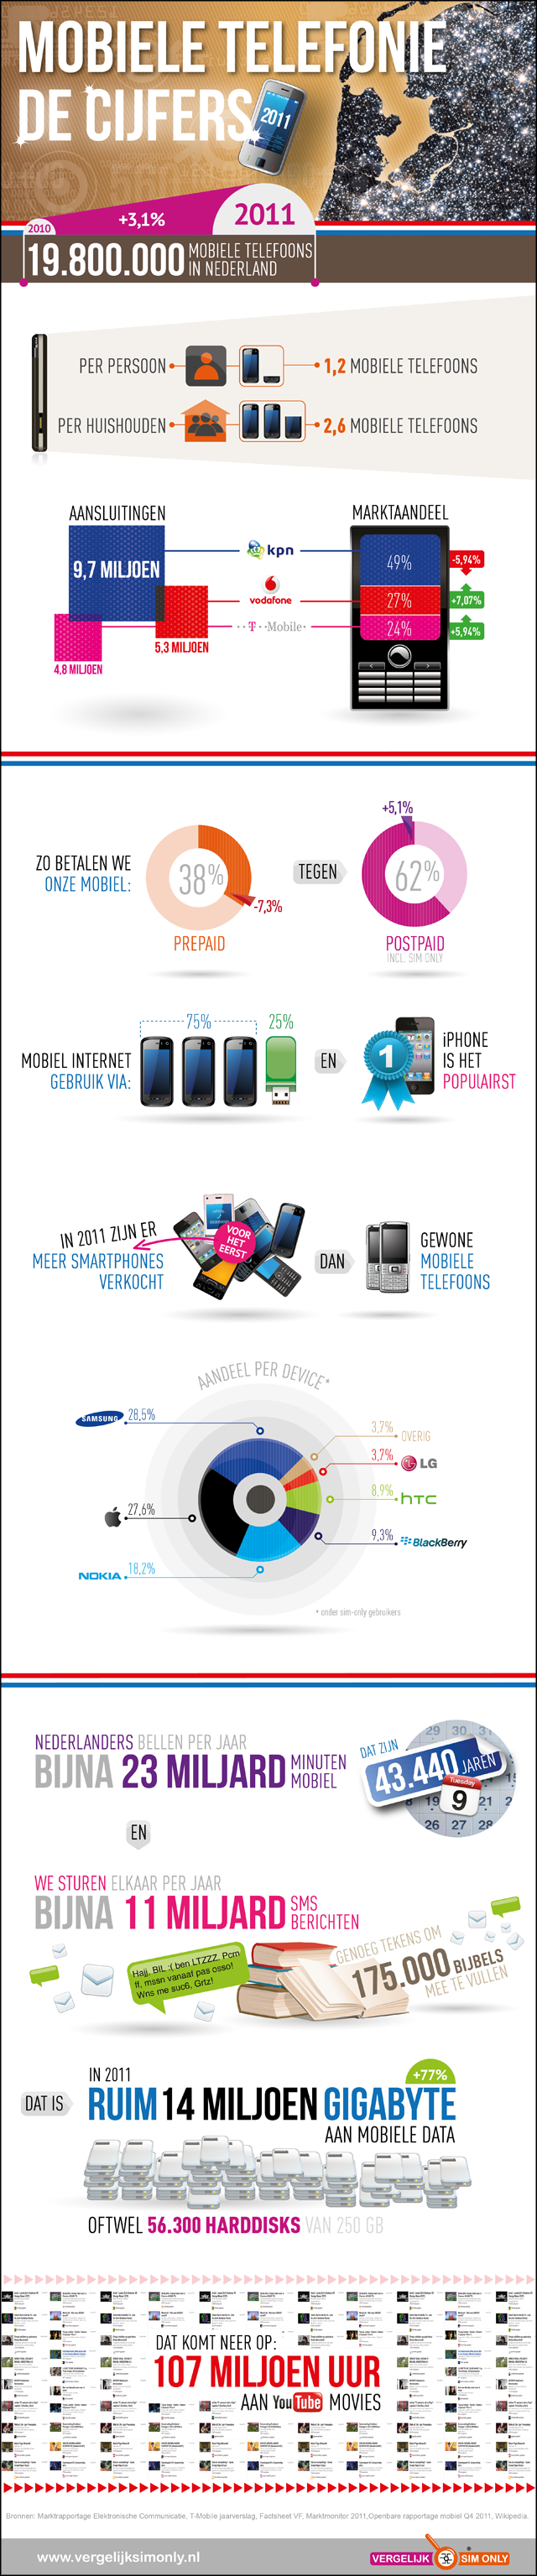 Mobiele Telefonie: De Cijfers - Vergelijk Sim Only